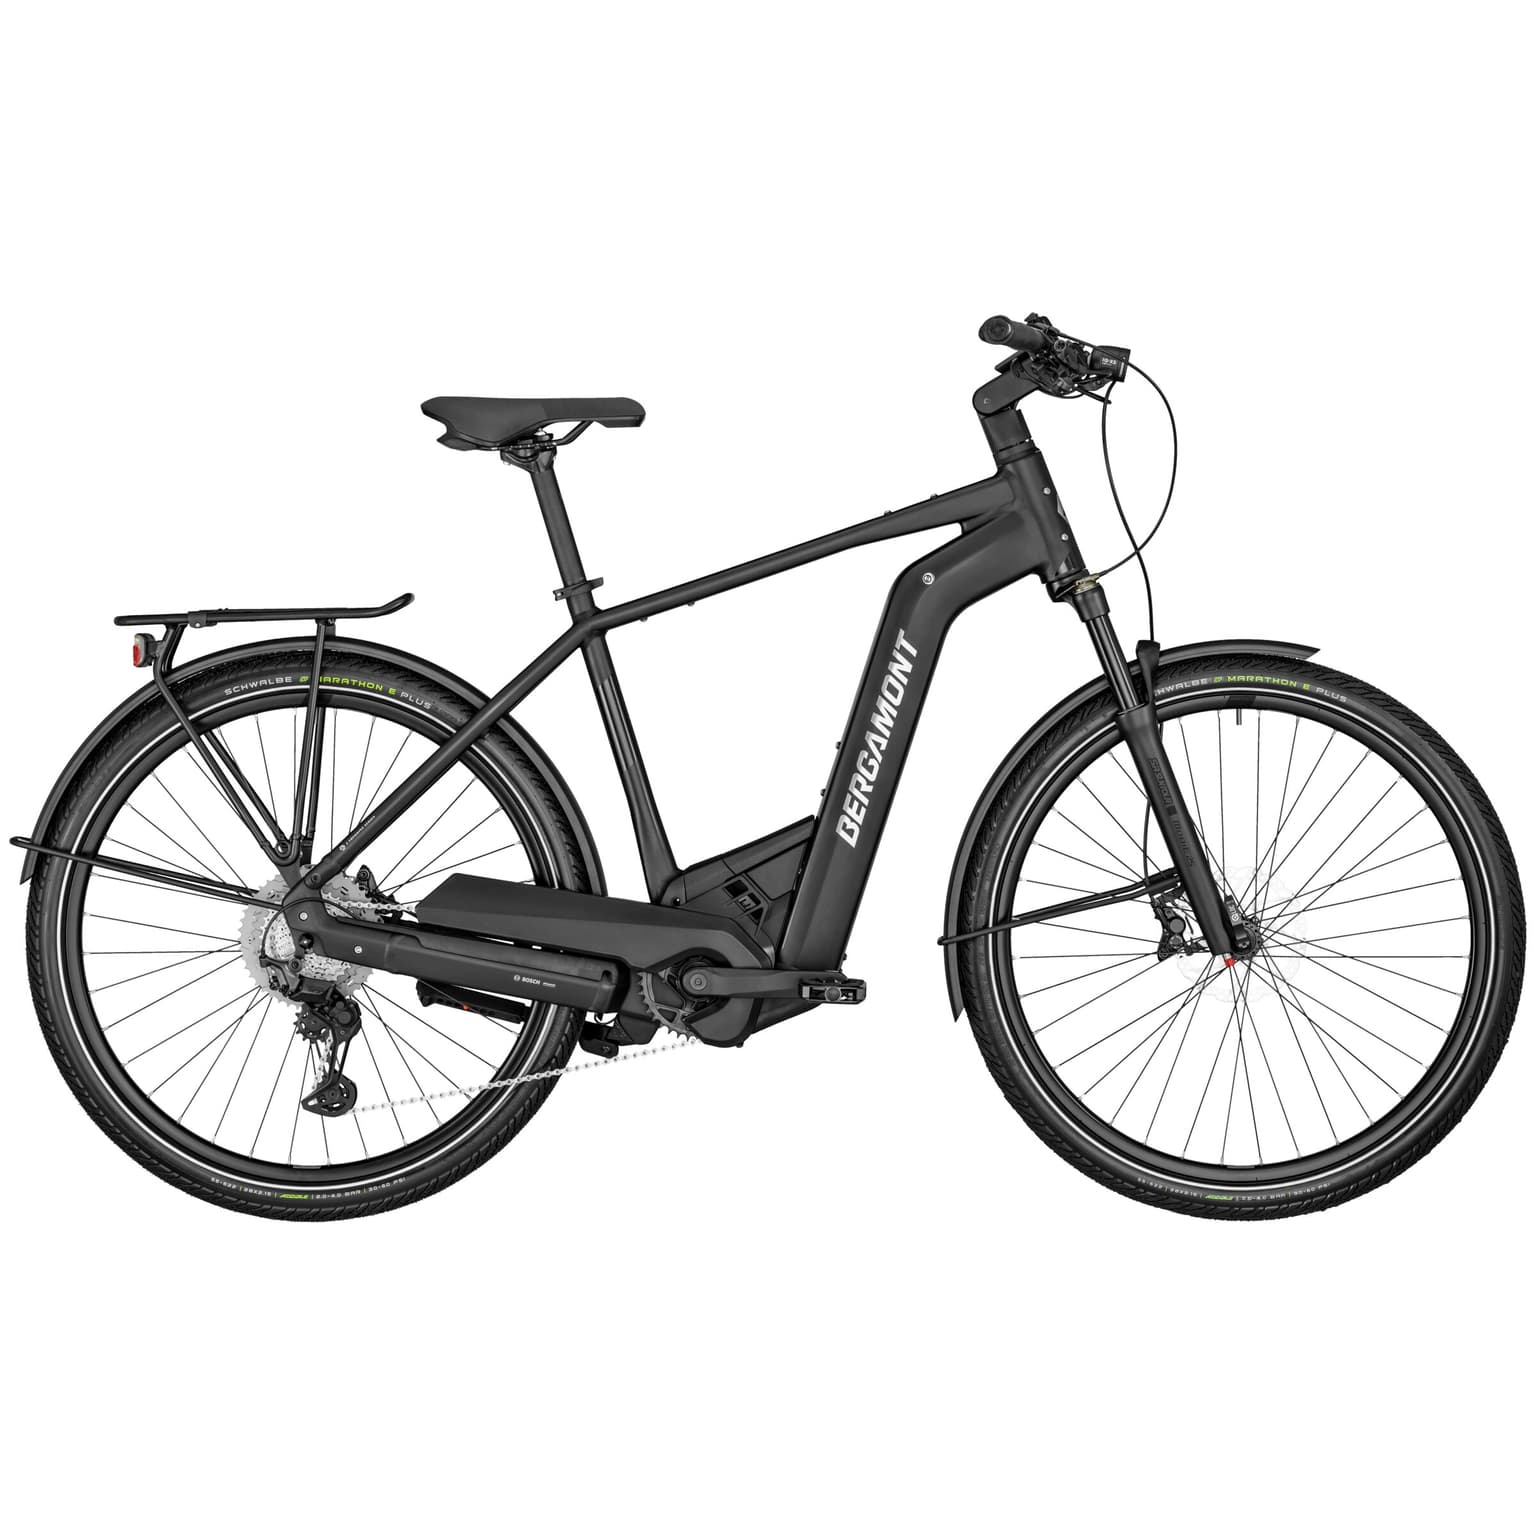 Bergamont Bergamont E-Horizon Premium Expert Bicicletta elettrica 25km/h nero 1